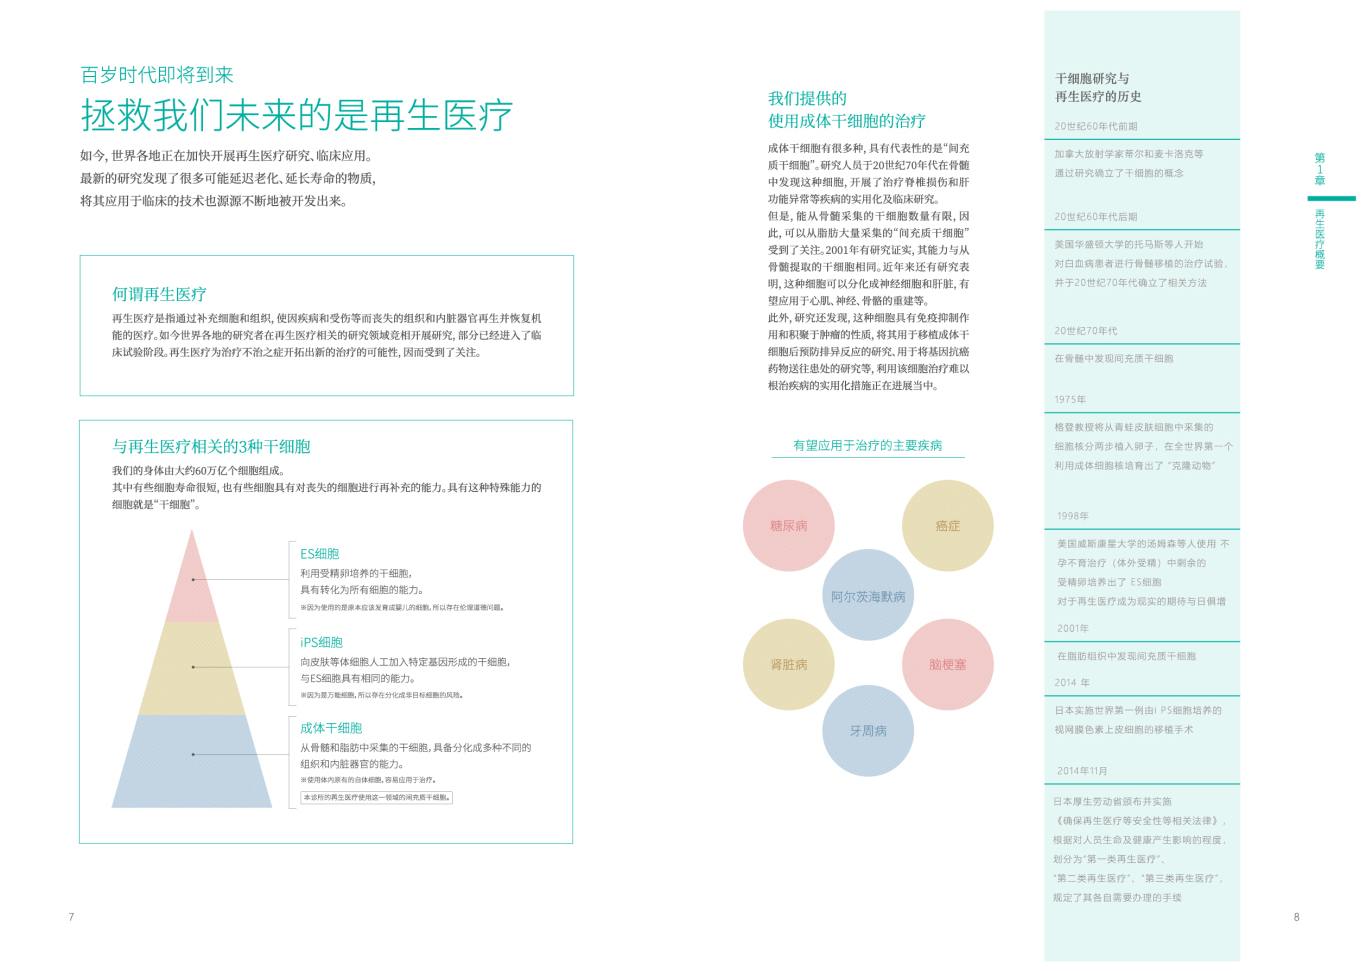 東南健康企业宣传册图2